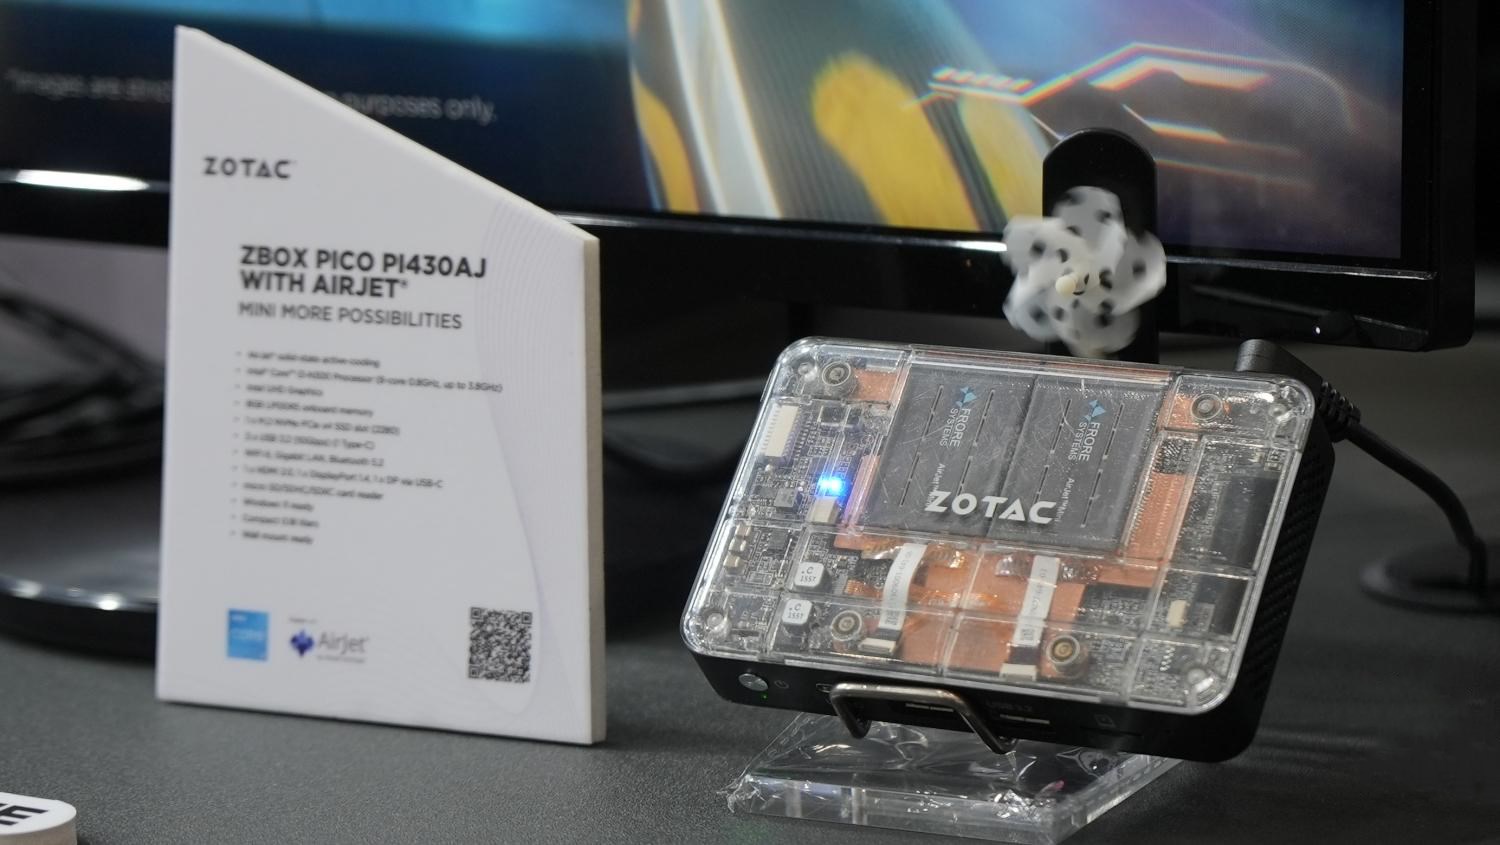 Cep boyutlarında mini PC: Zotac Zbox Pico tanıtıldı